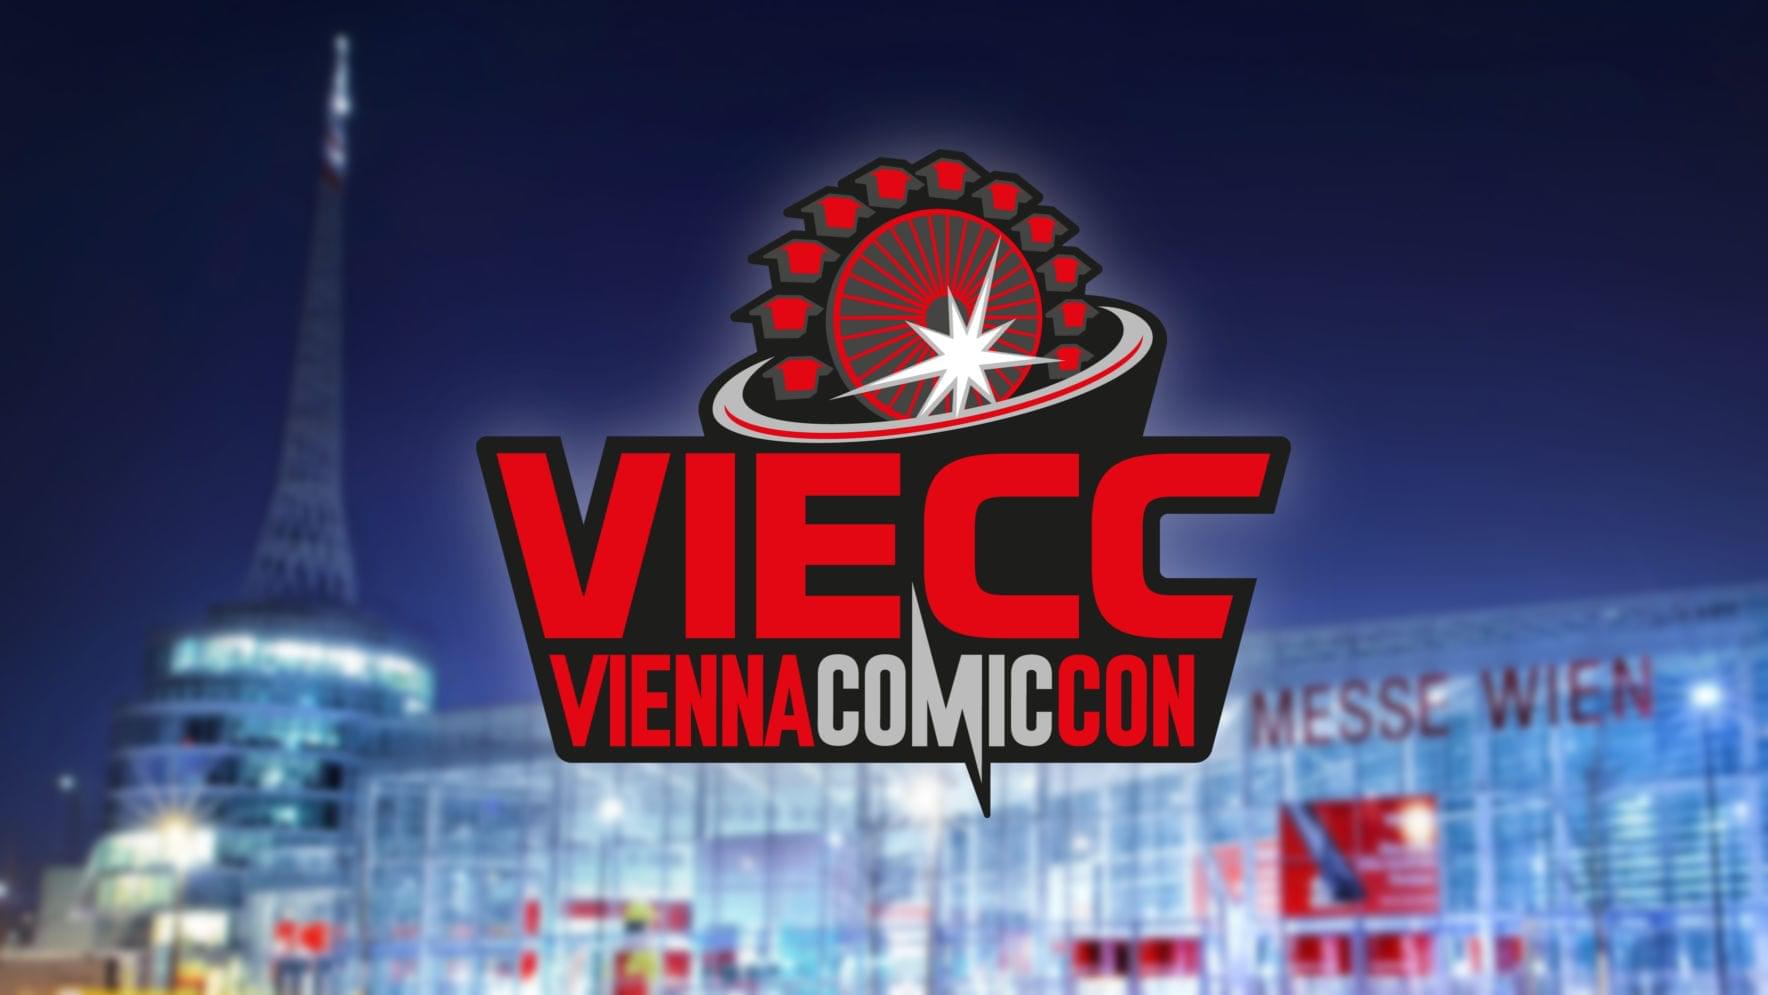 VIECC 2020